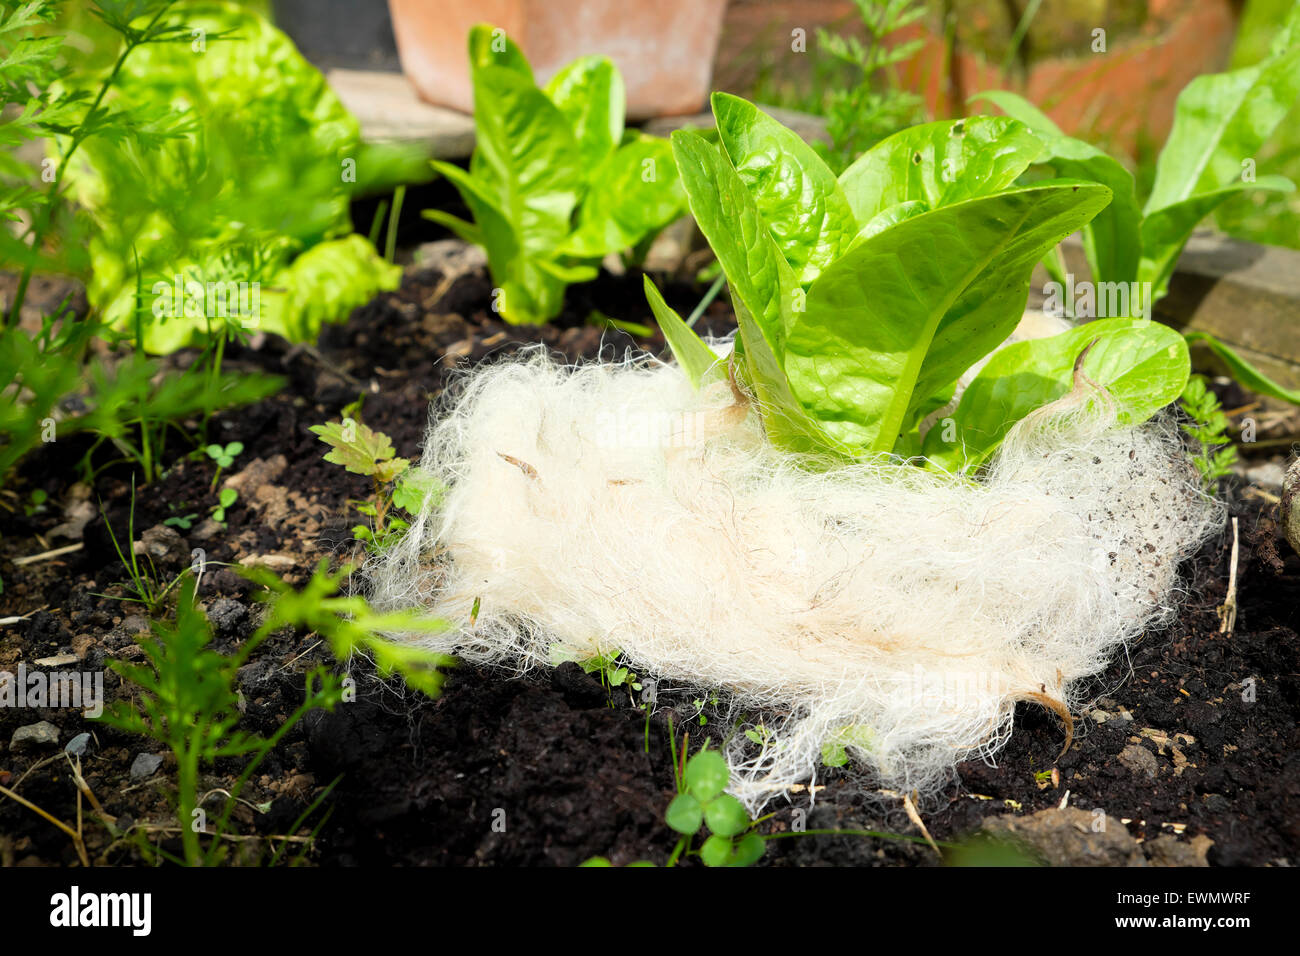 Weiße Schafe Wolle als Mulch verwendet umgibt eine junger Grüner Blattsalat  Anlage zur Abschreckung von Schnecken in einem Garten in Wales UK KATHY  DEWITT Stockfotografie - Alamy